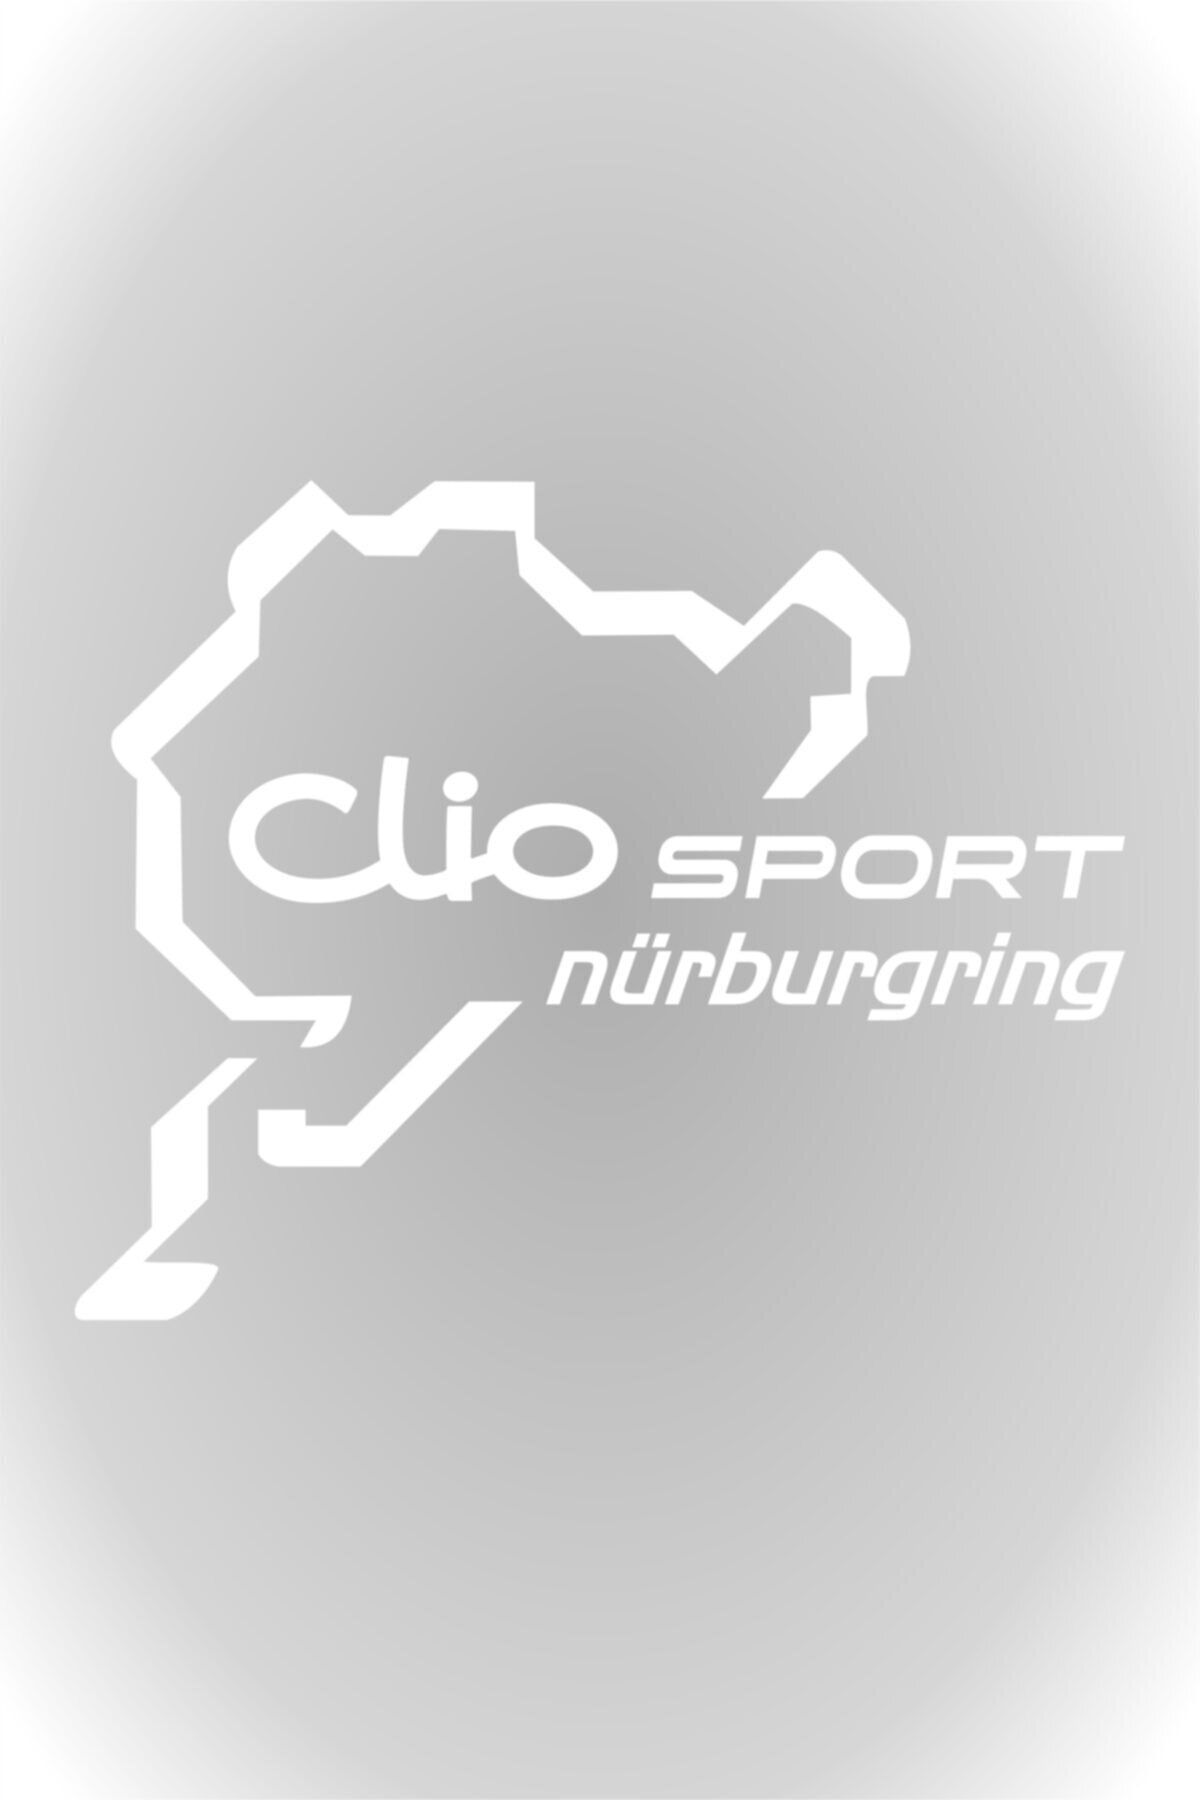 HMNL Clio Sport Nürburgring Oto Sticker Araba Sticker Beyaz 30 X 24 Cm